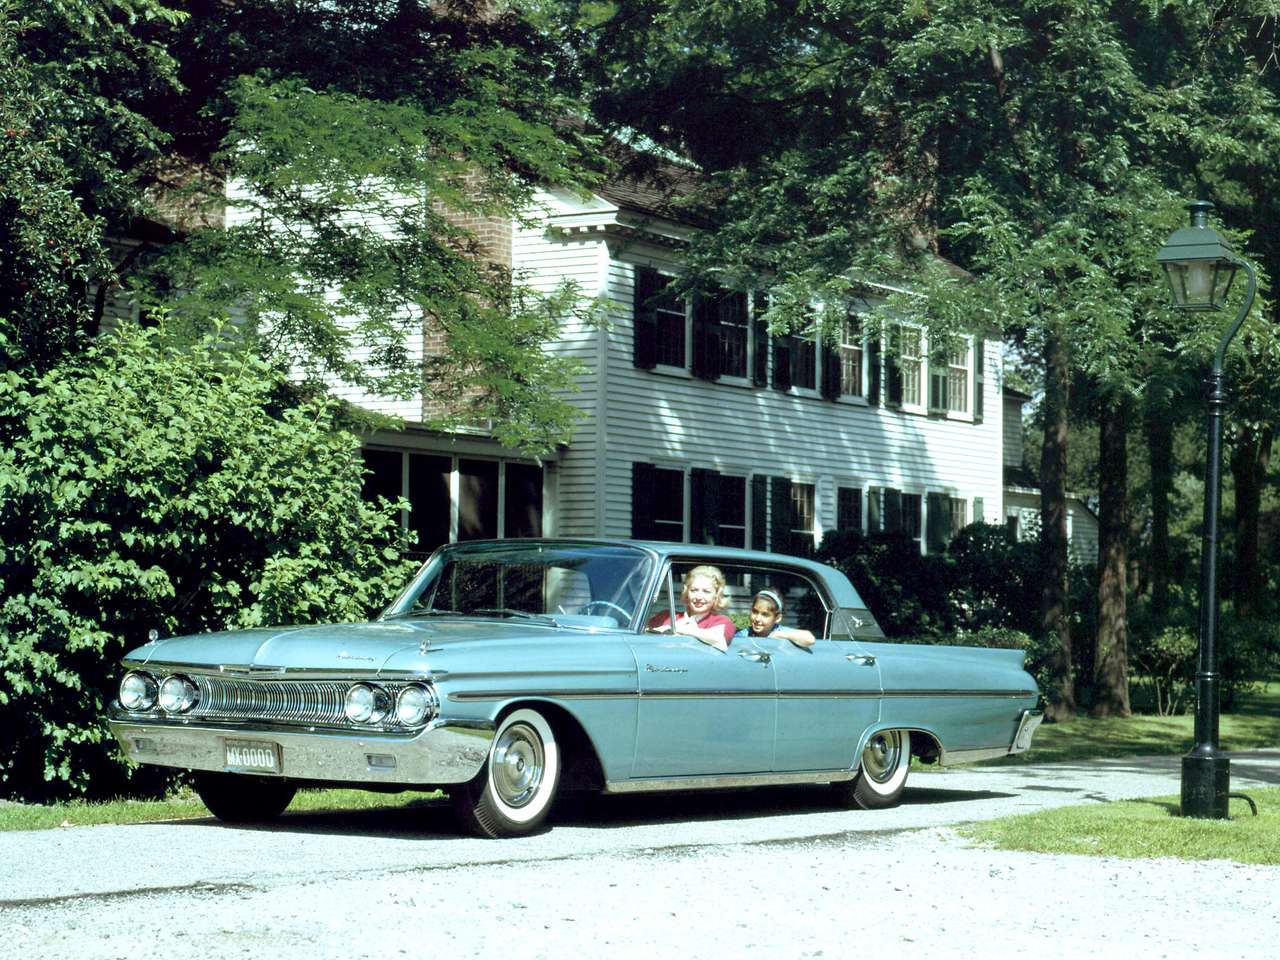 1961 Mercury Monterey à toit rigide 4 portes puzzle en ligne